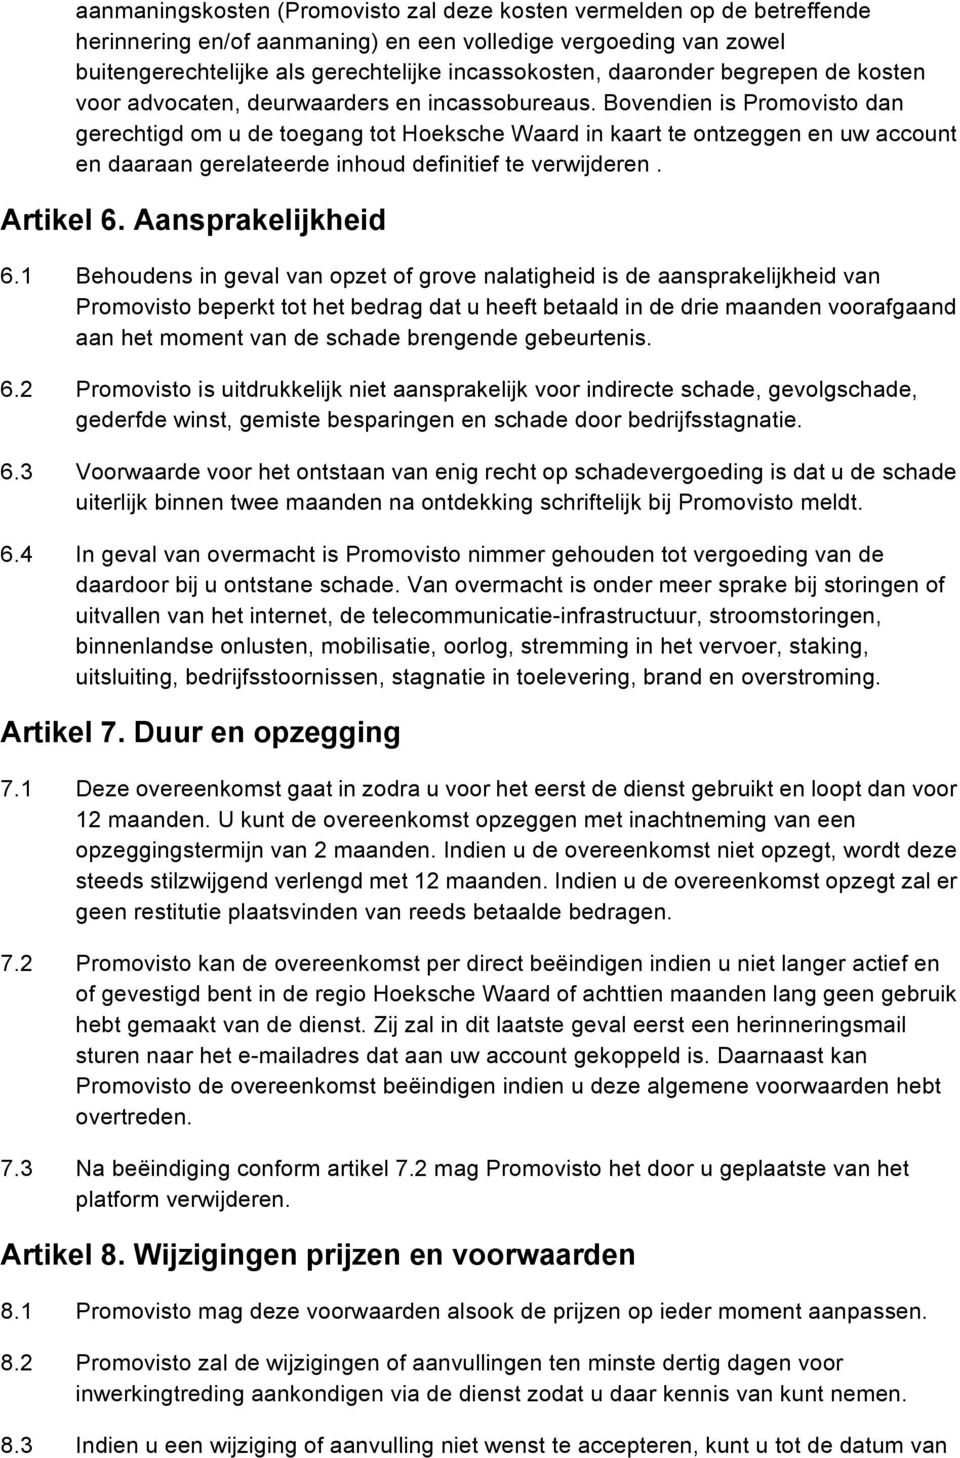 Bovendien is Promovisto dan gerechtigd om u de toegang tot Hoeksche Waard in kaart te ontzeggen en uw account en daaraan gerelateerde inhoud definitief te verwijderen. Artikel 6. Aansprakelijkheid 6.